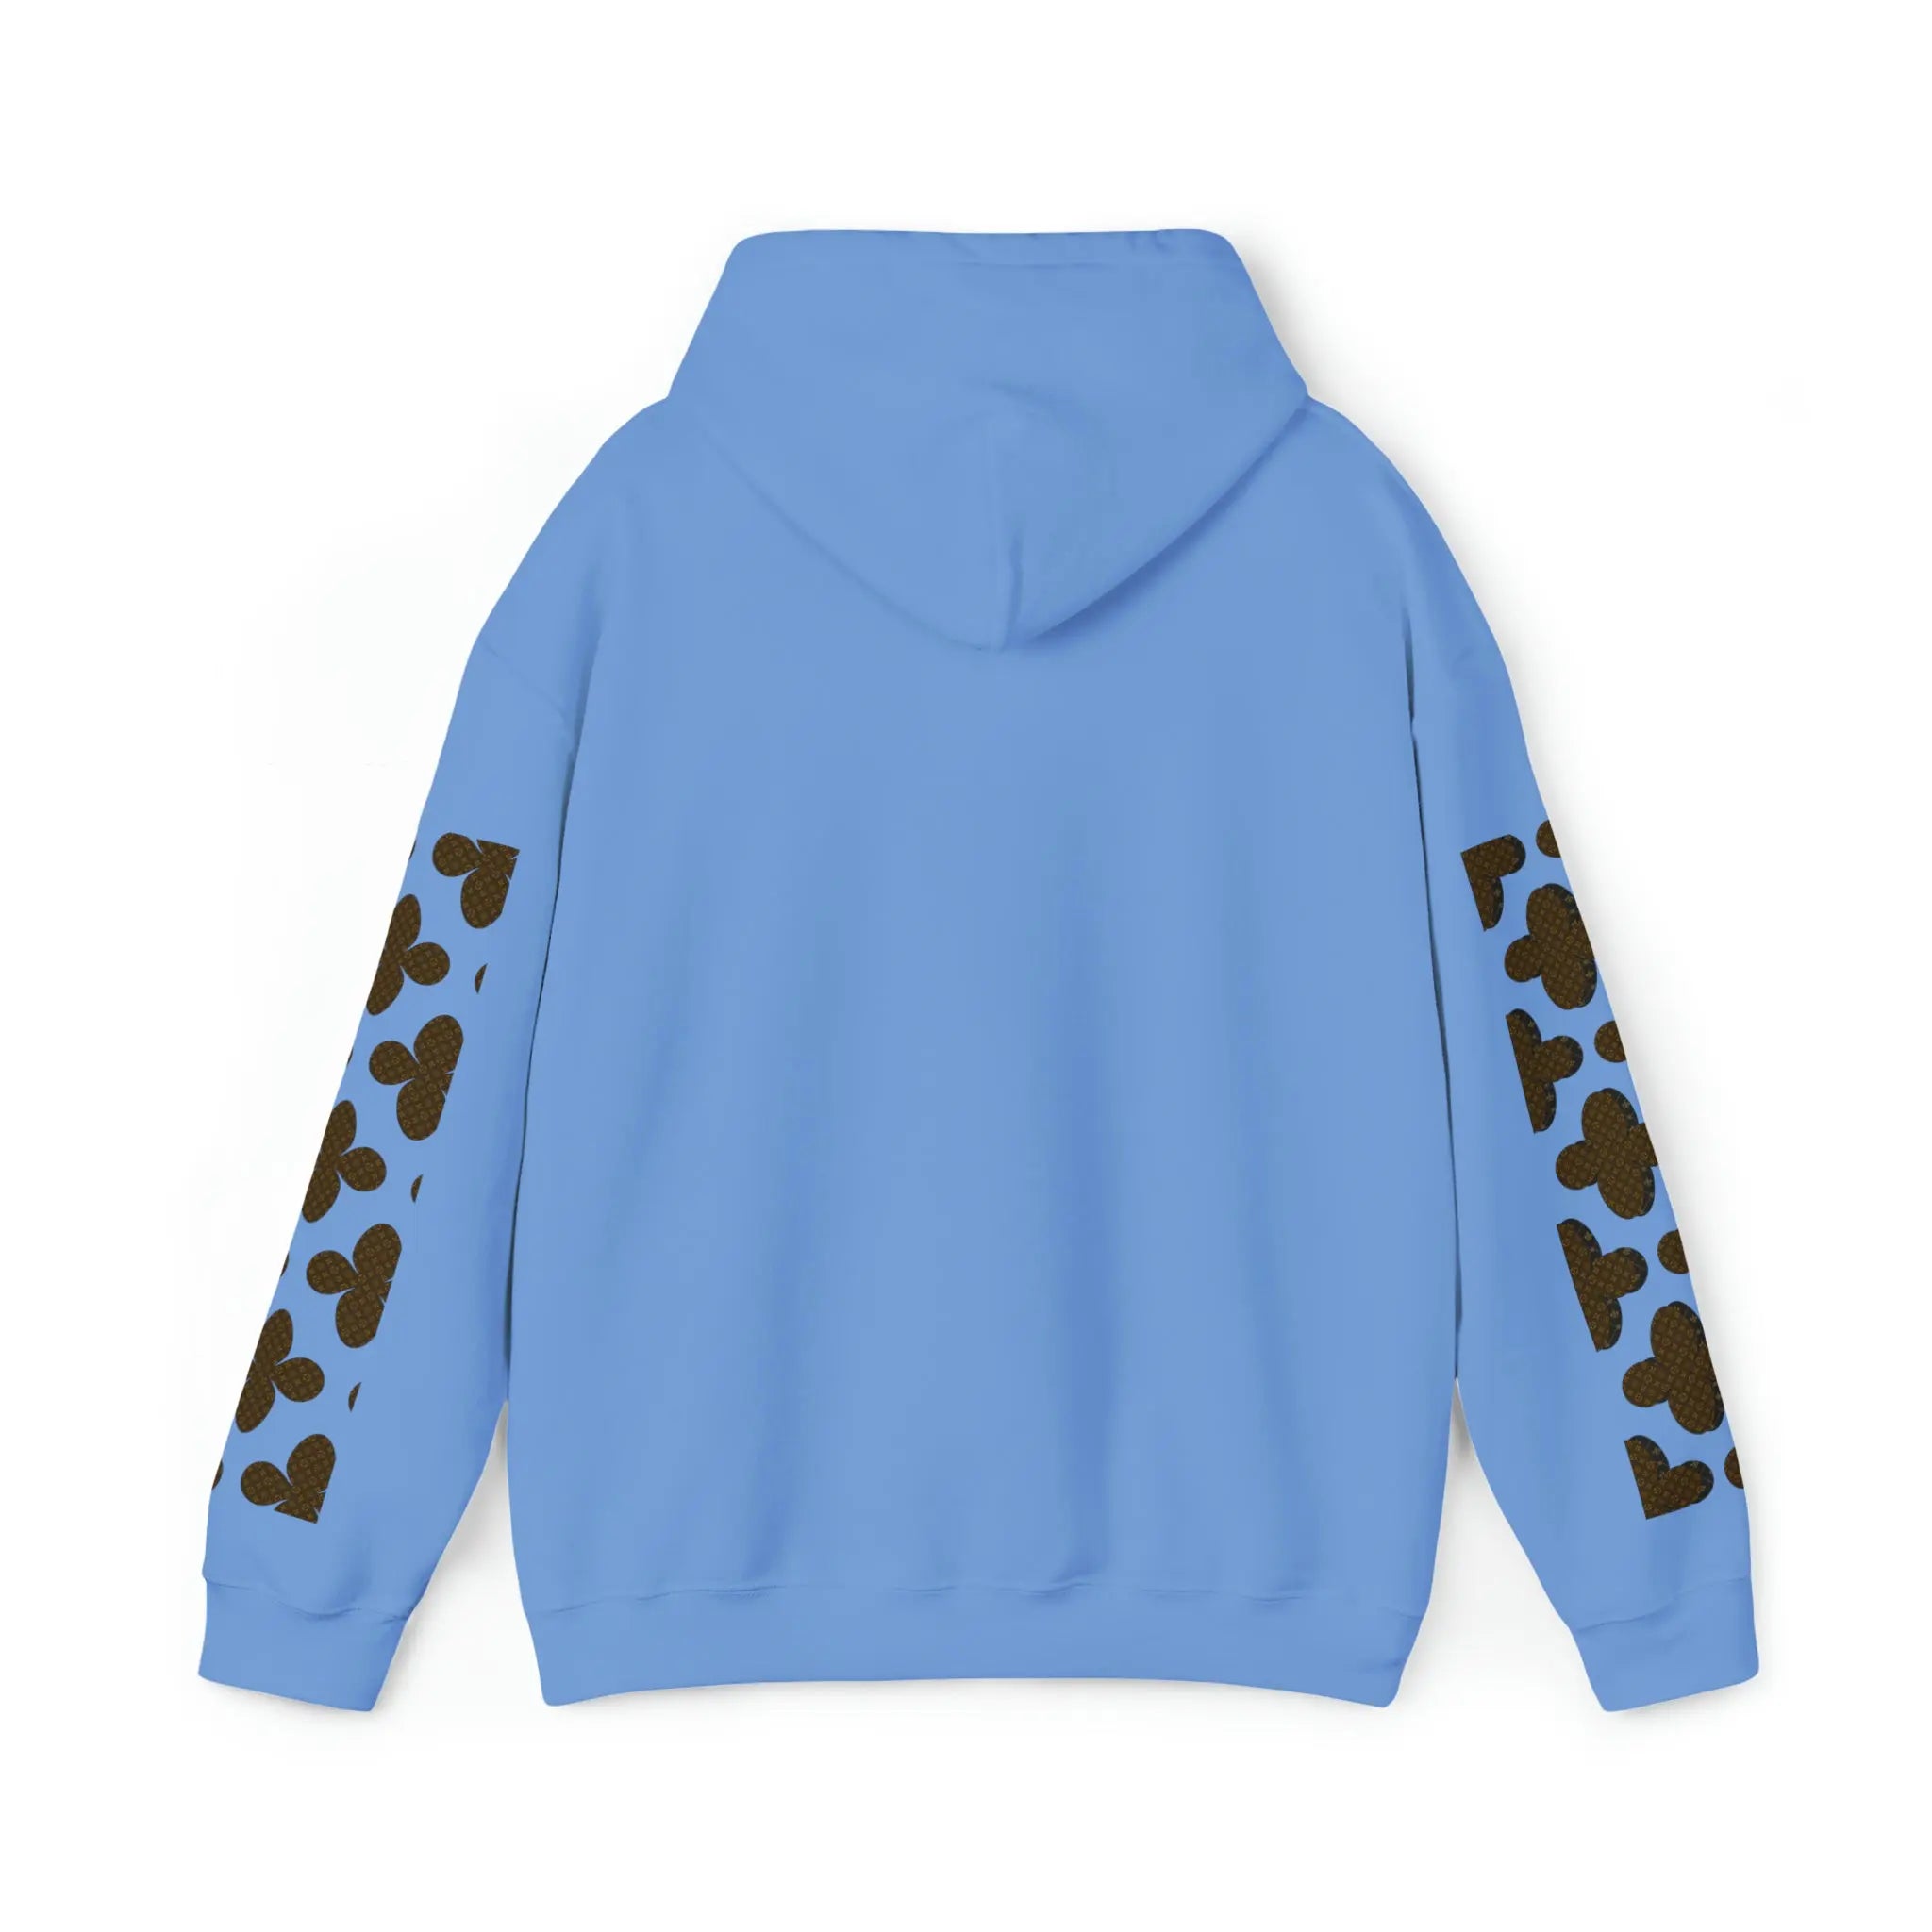  Brown Icons Flower with Sleeve Print Unisex Heavy Blend Hooded Sweatshirt Hoodie